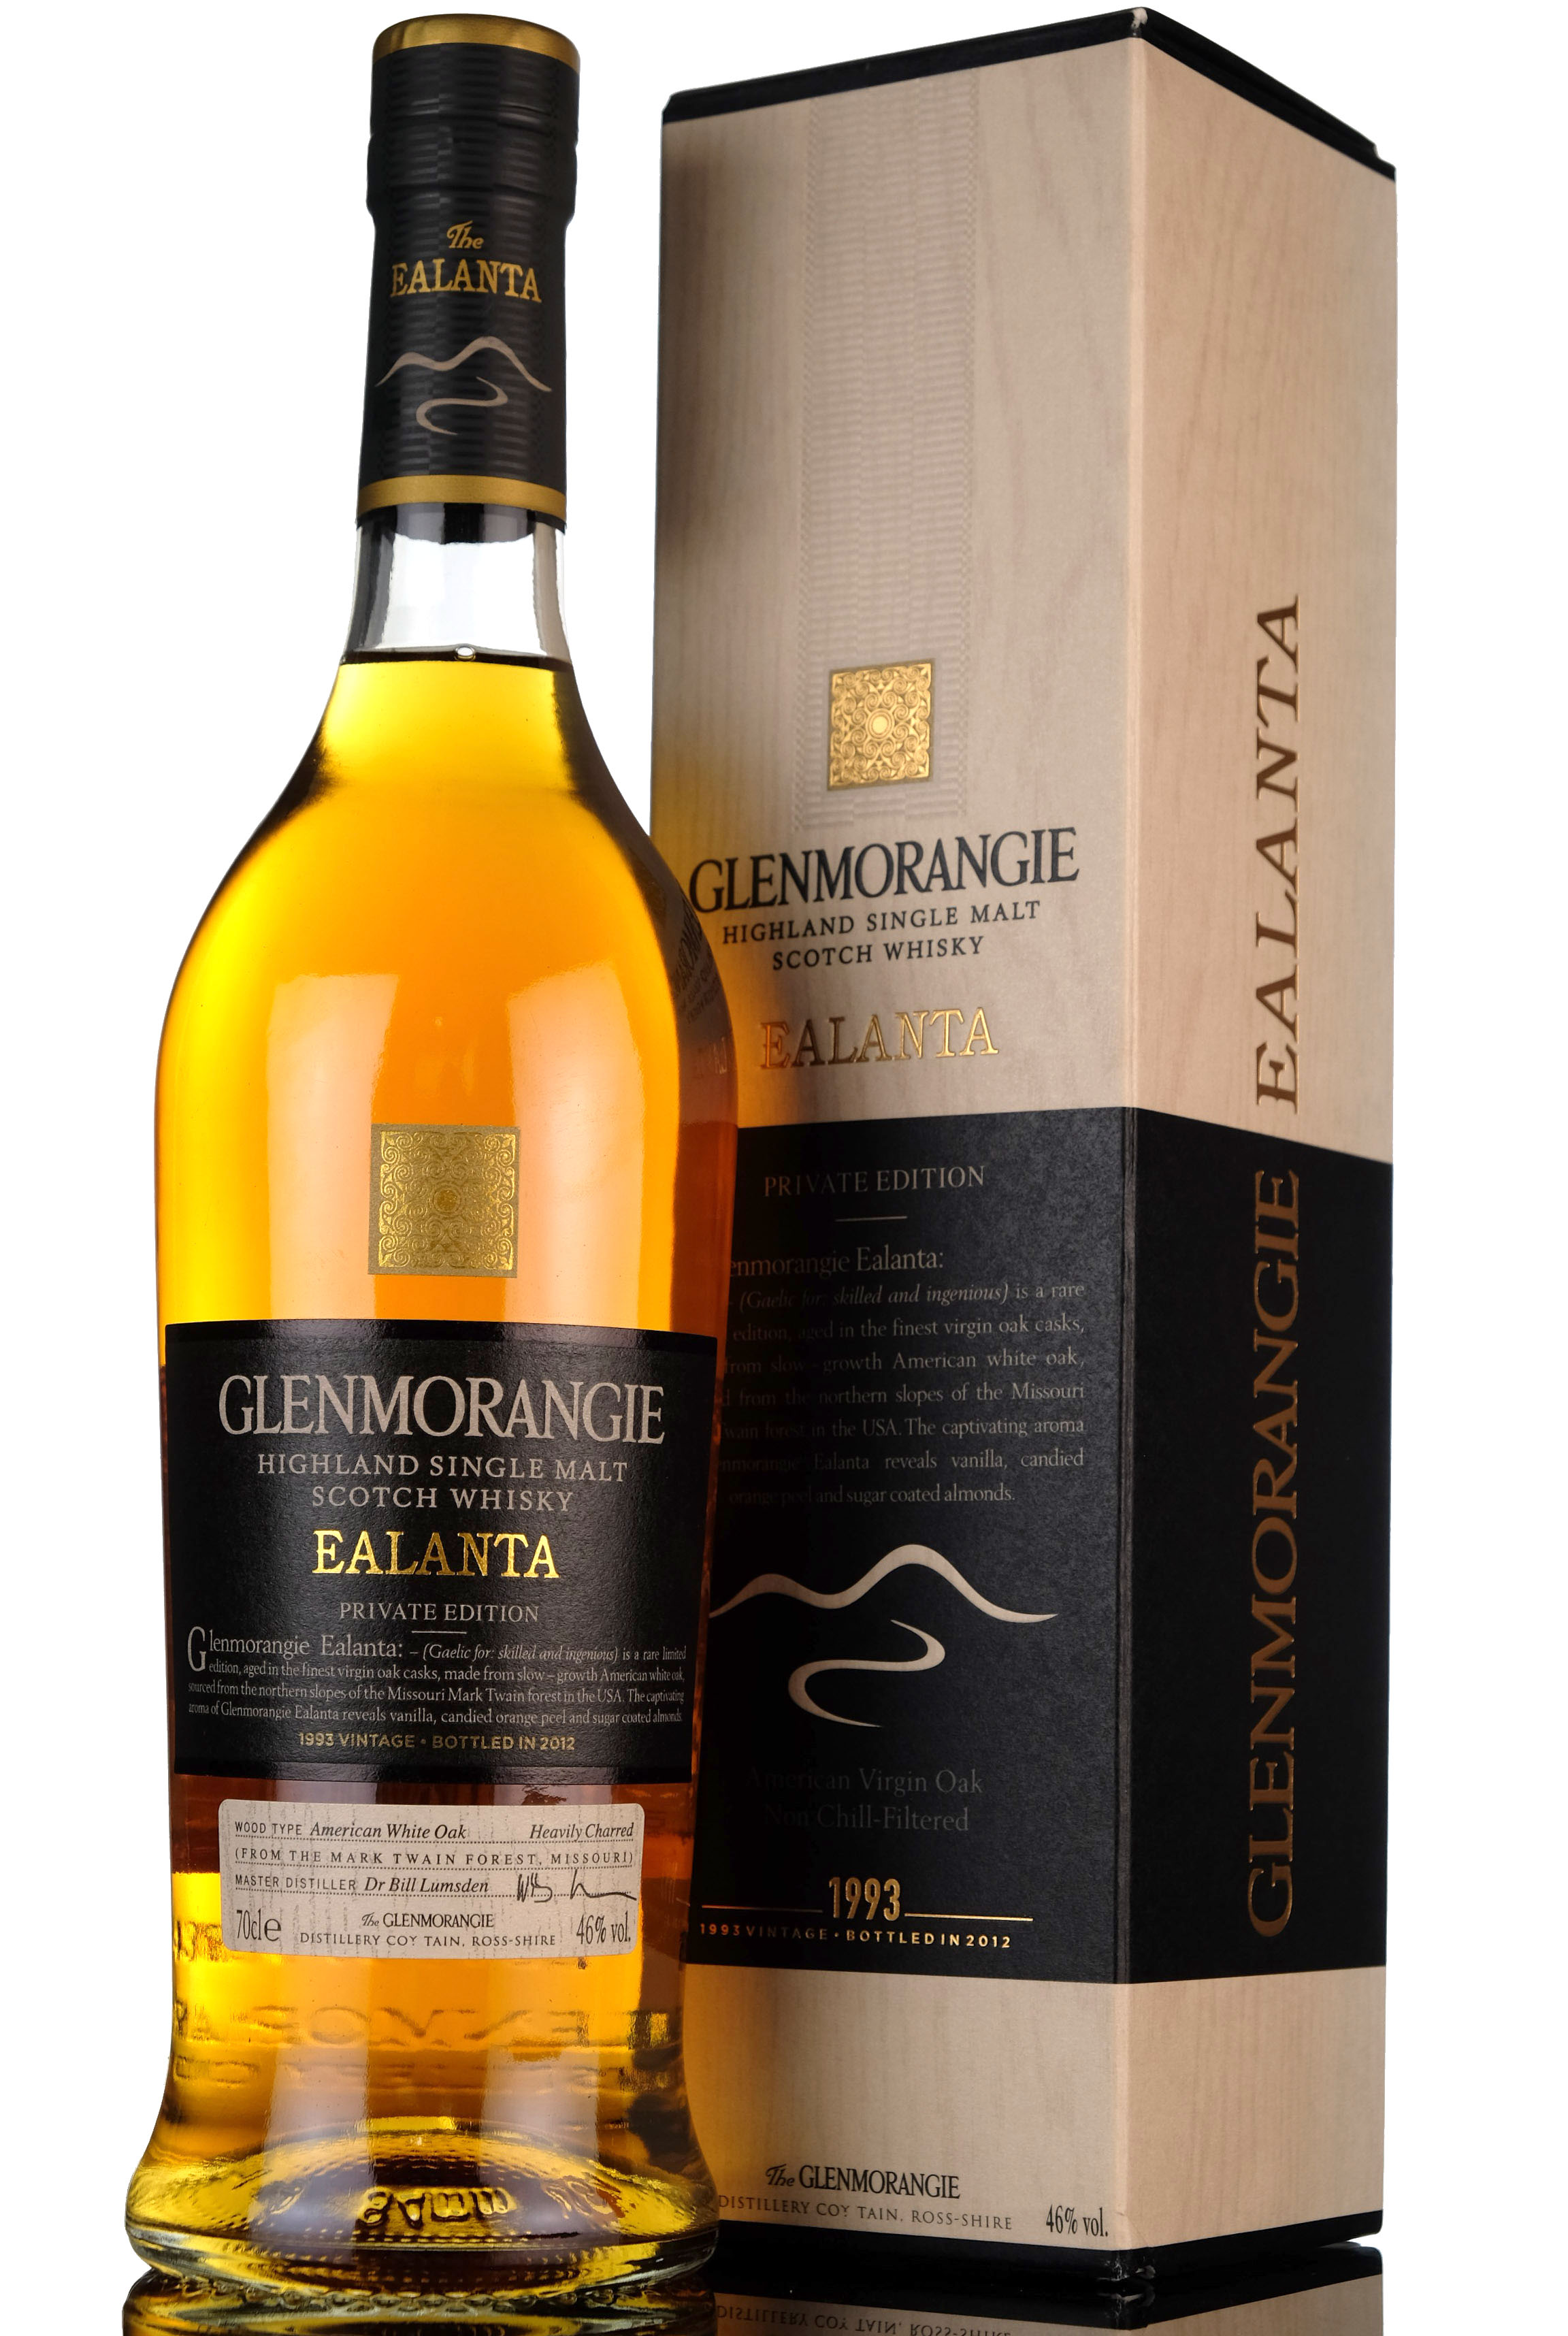 Glenmorangie 1993-2012 - Ealanta Private Edition - 4th release